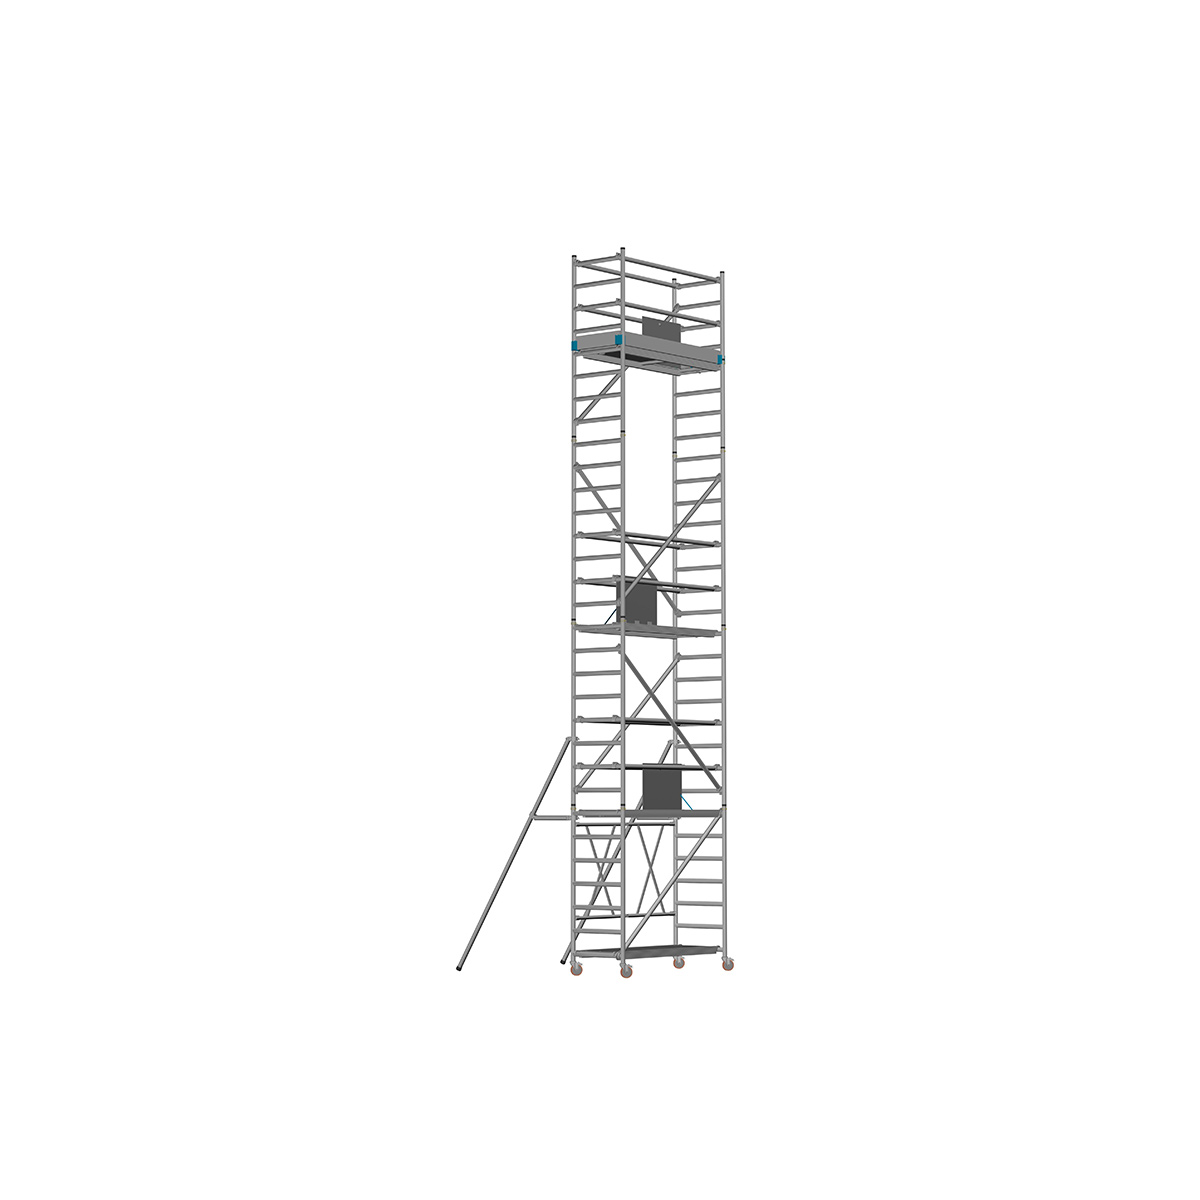 Chiemsee 1 LIGHT - Länge: 1,83 m - Breite: 0,74 m, Standhöhe 0,80 m